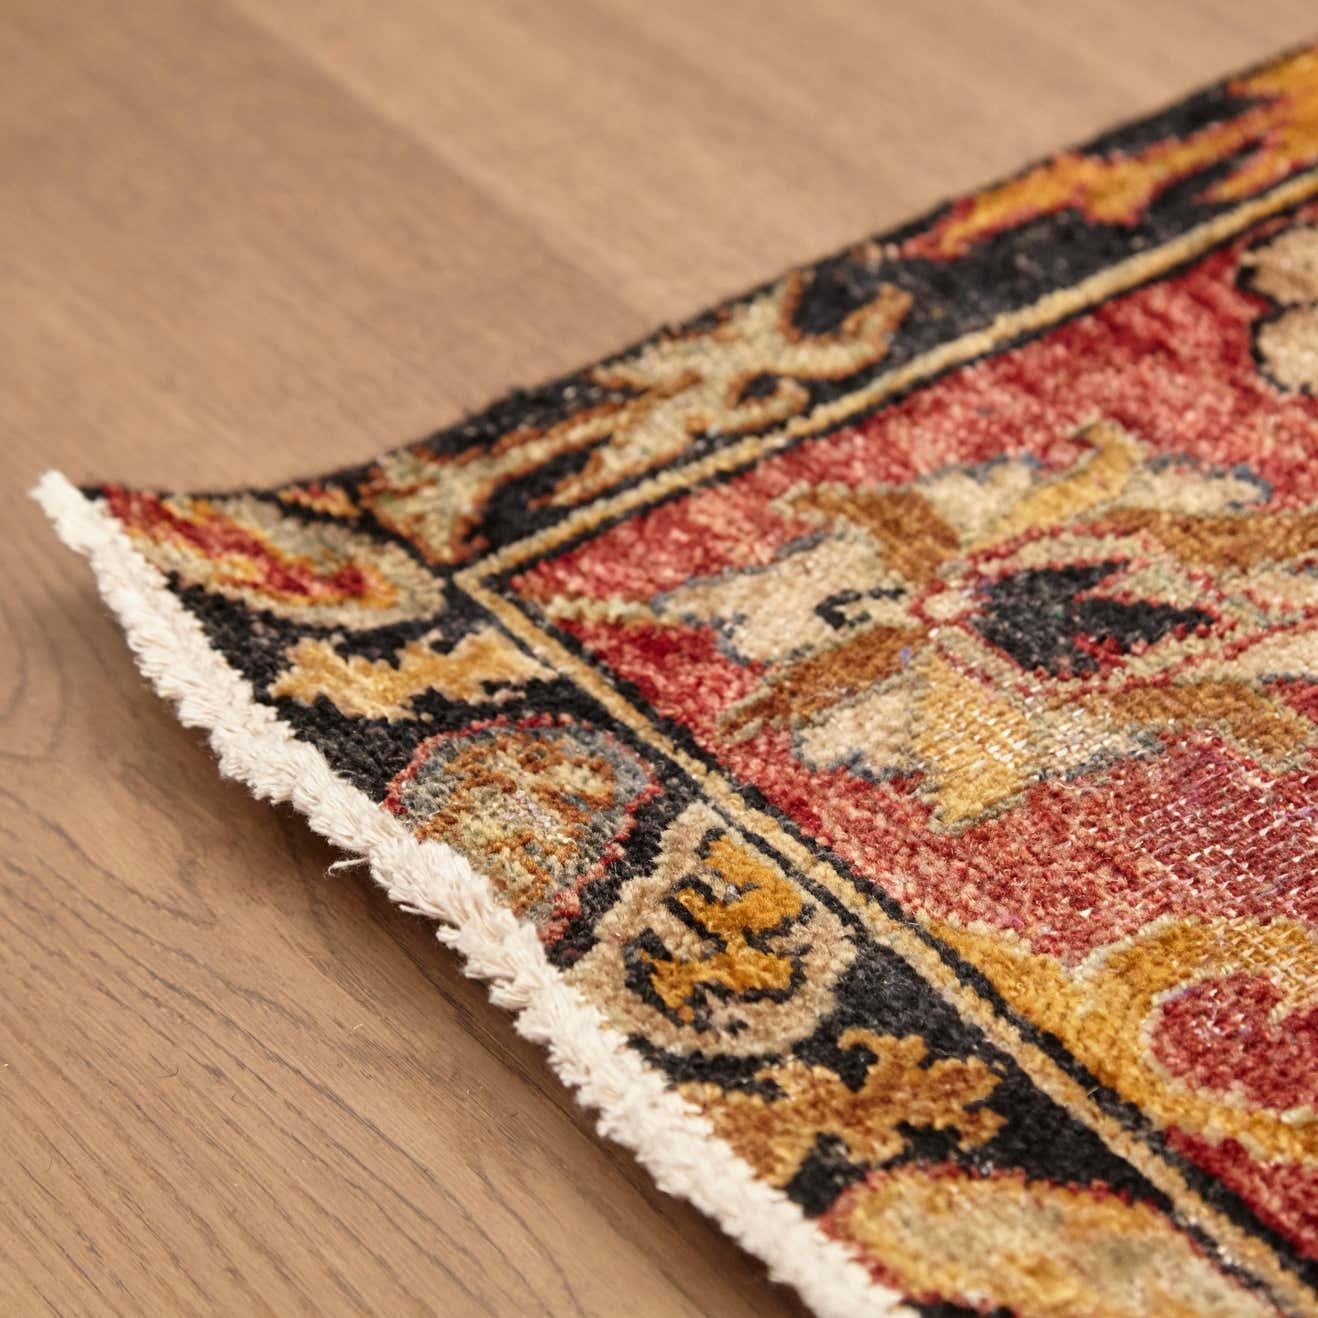 Im Stil des alten Bidjar-Teppichs aus Indien aus dem Jahr 2013

Persische handgeknüpfte Wolle stonewashed
Maße: 268 x 378 cm.
   